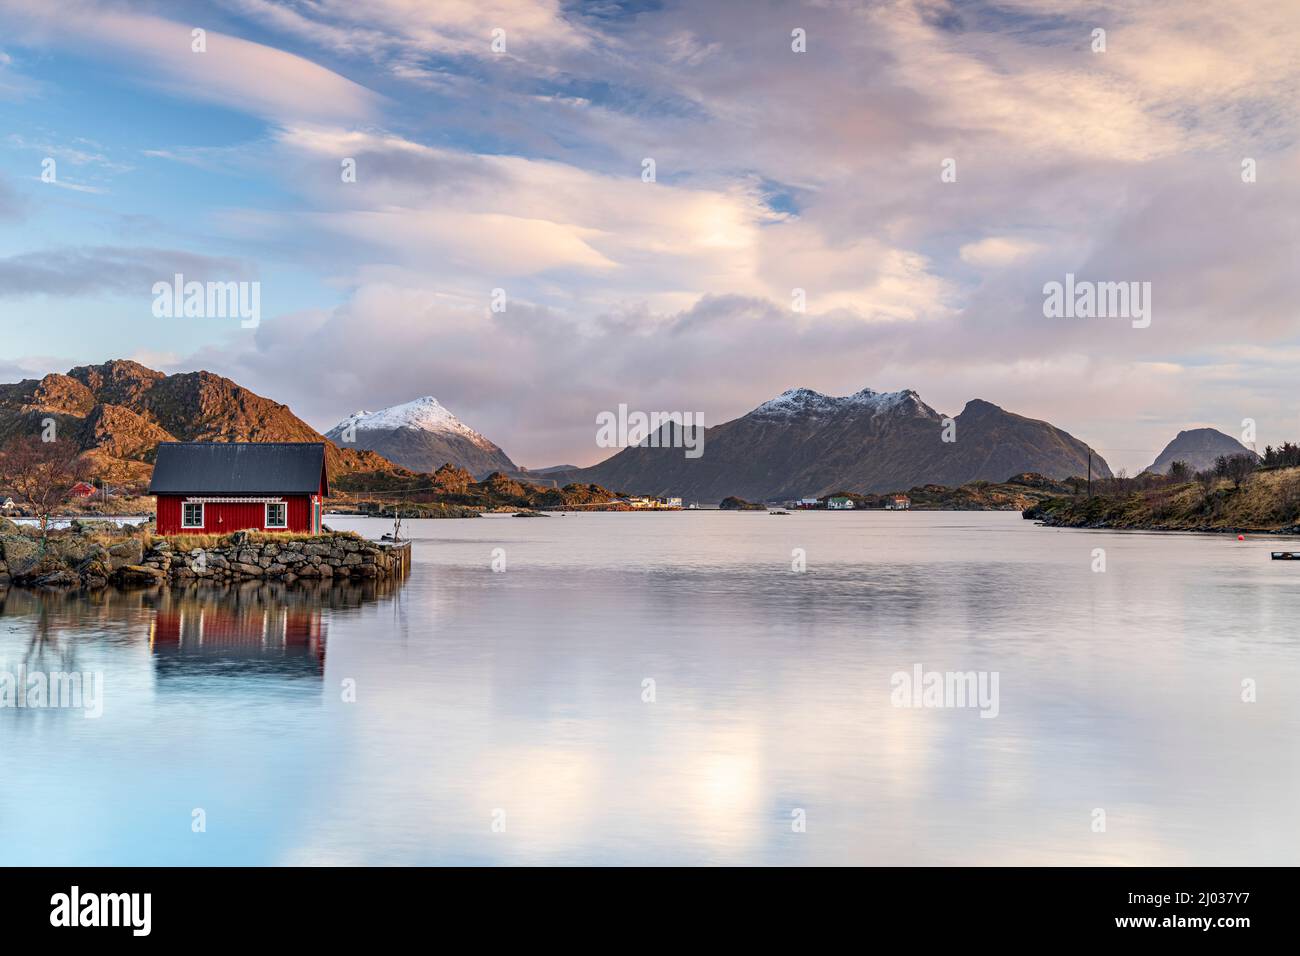 Cabina di pescatori isolata riflessa in mare all'alba, Ballstad, Vestvagoy, contea di Nordland, Isole Lofoten, Norvegia, Scandinavia, Europa Foto Stock